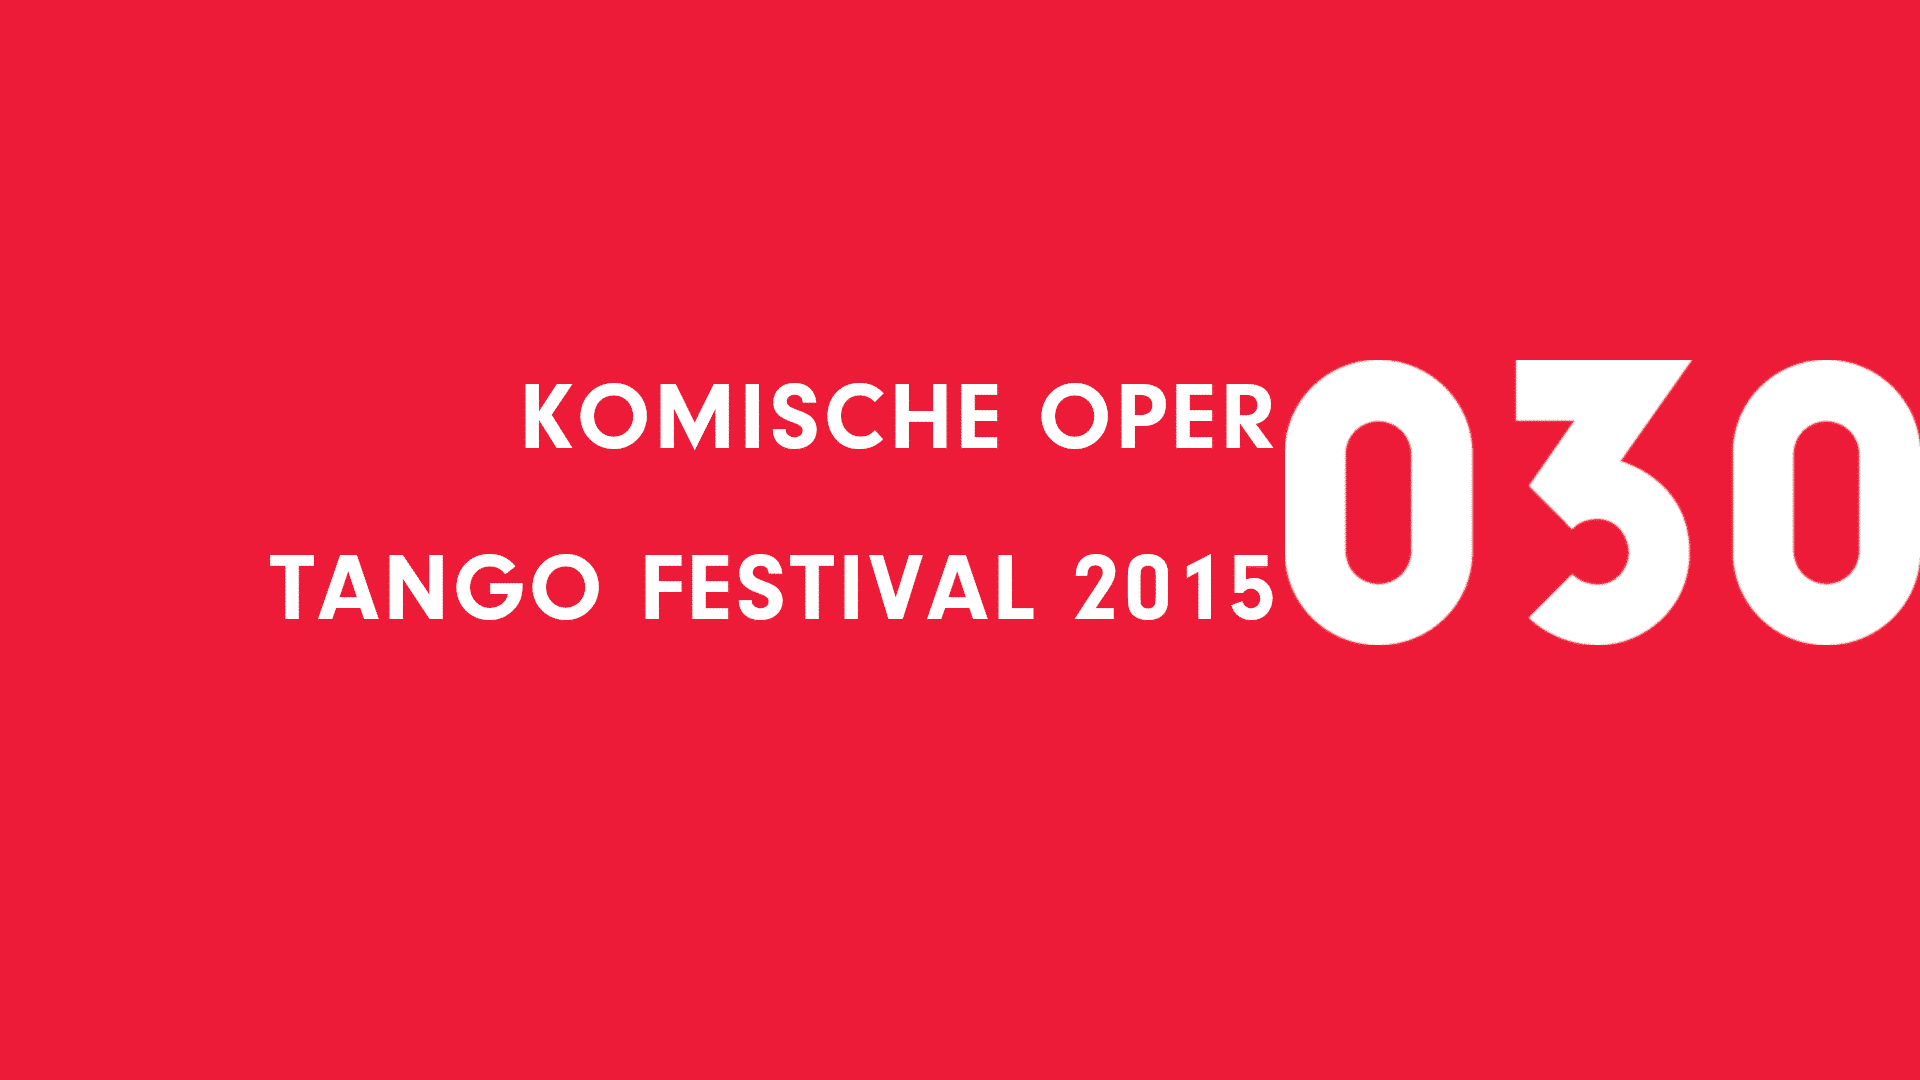 Komische Oper Tango Festival 2015 event picture